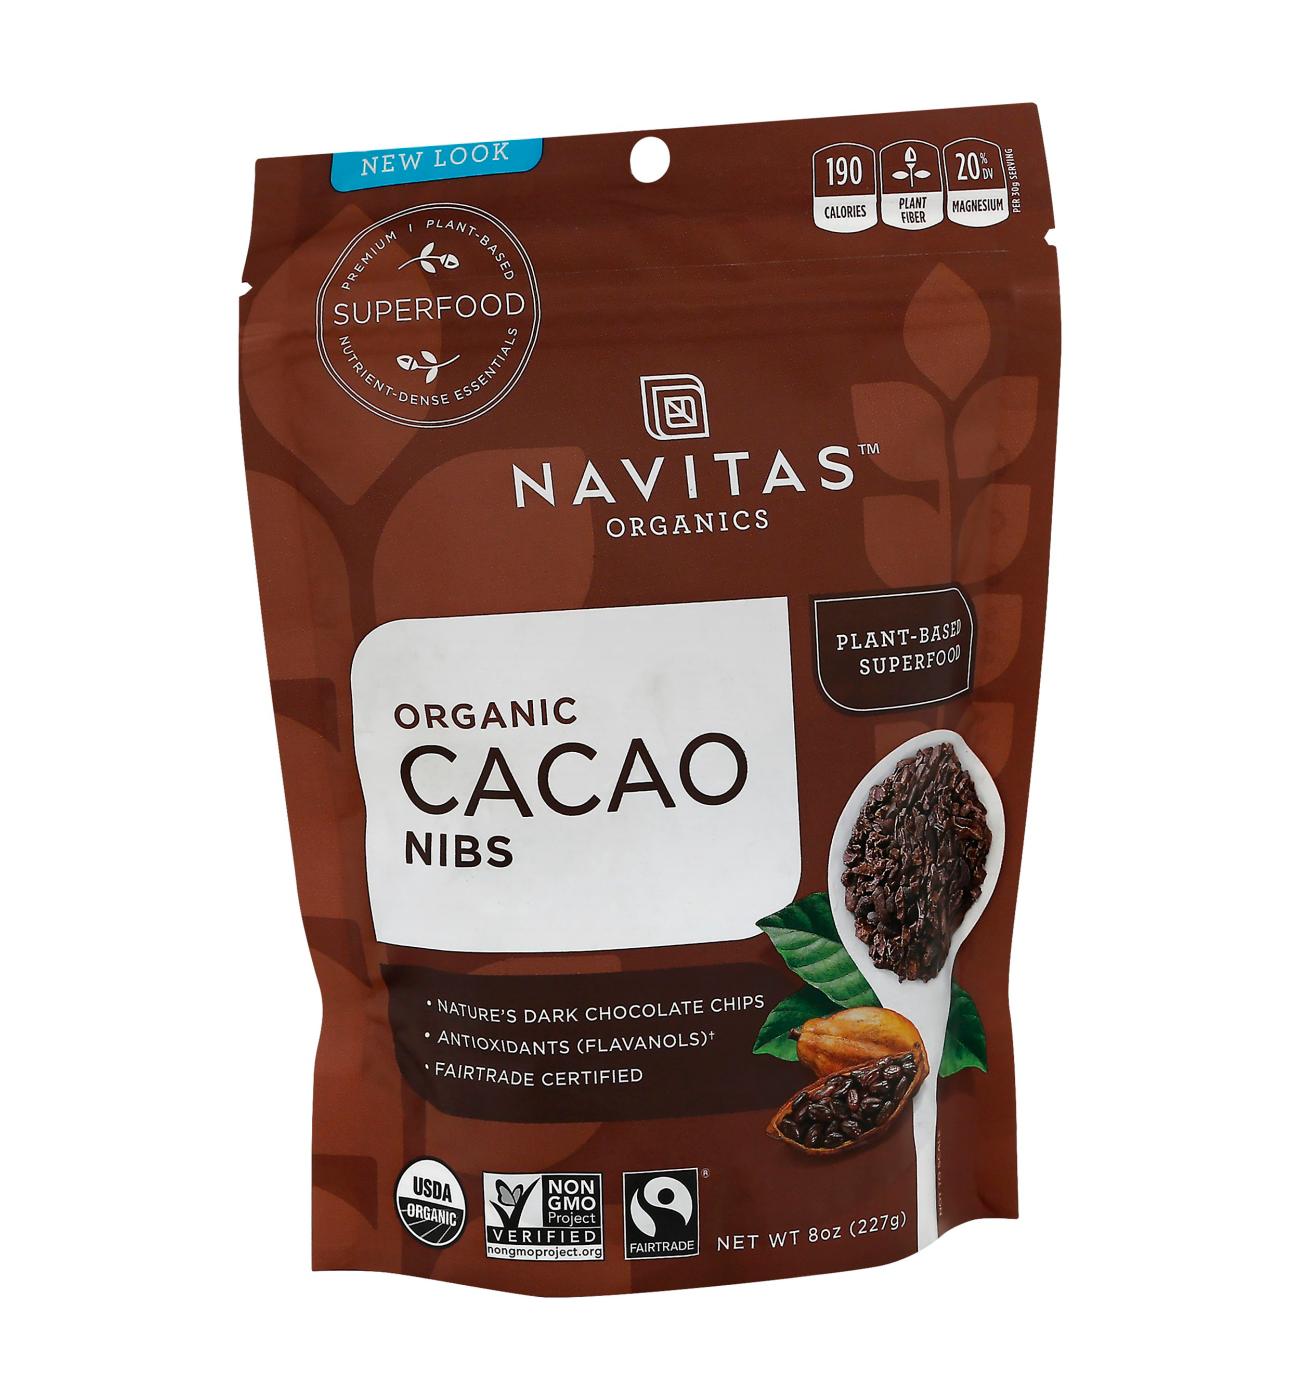 Navitas Organic Cacao Nibs; image 1 of 2